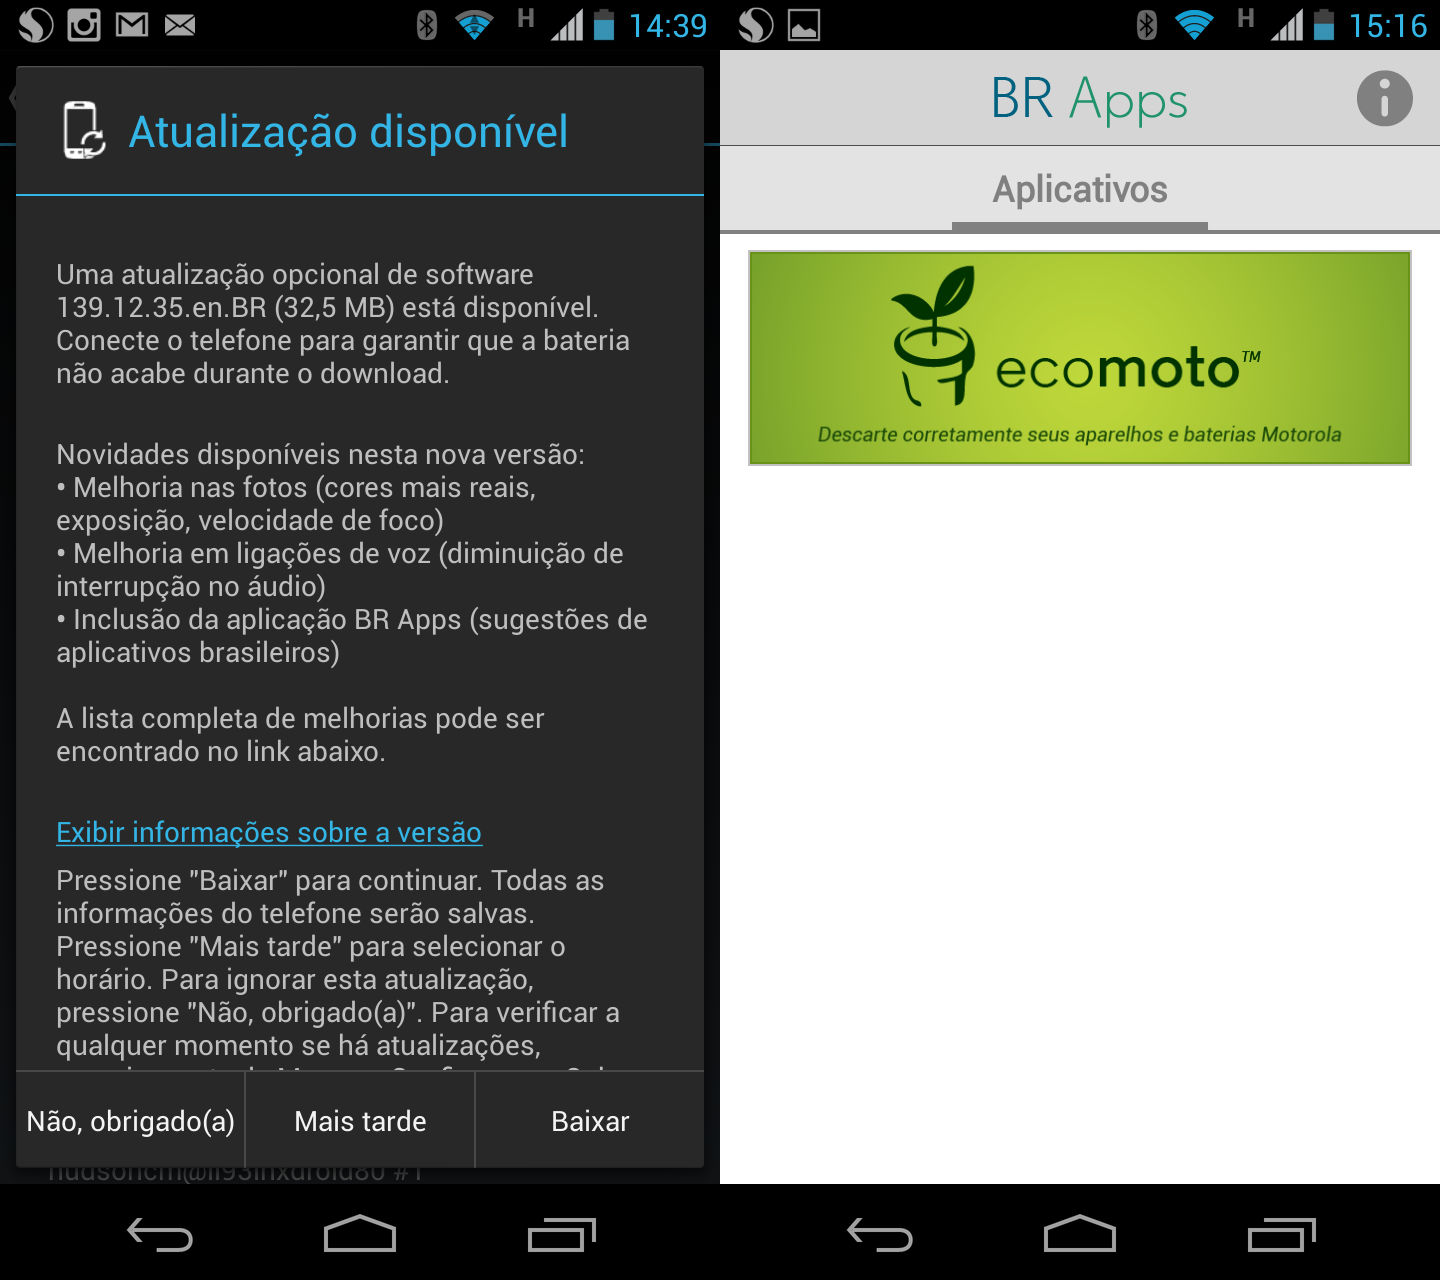 Motorola libera atualização no Brasil para melhorar câmera do Moto X e incluir aplicativos nacionais